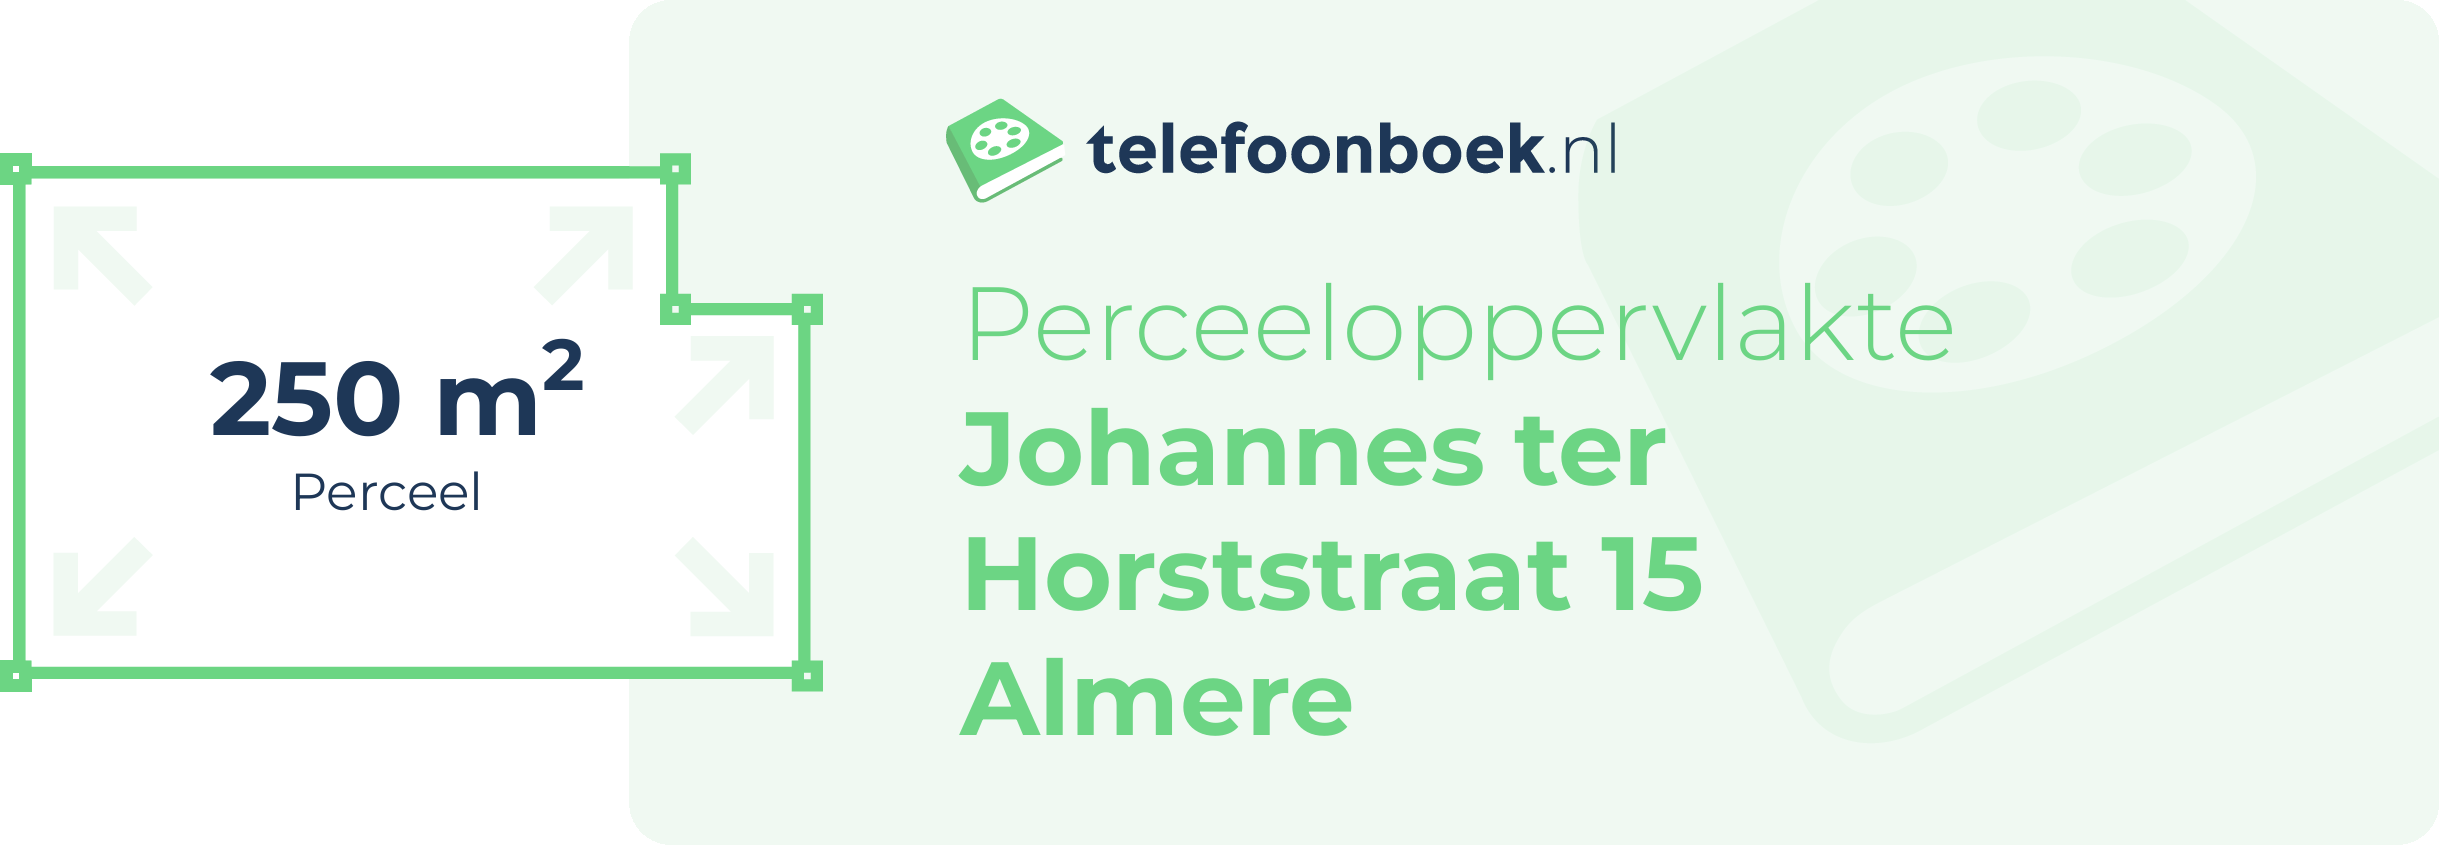 Perceeloppervlakte Johannes Ter Horststraat 15 Almere